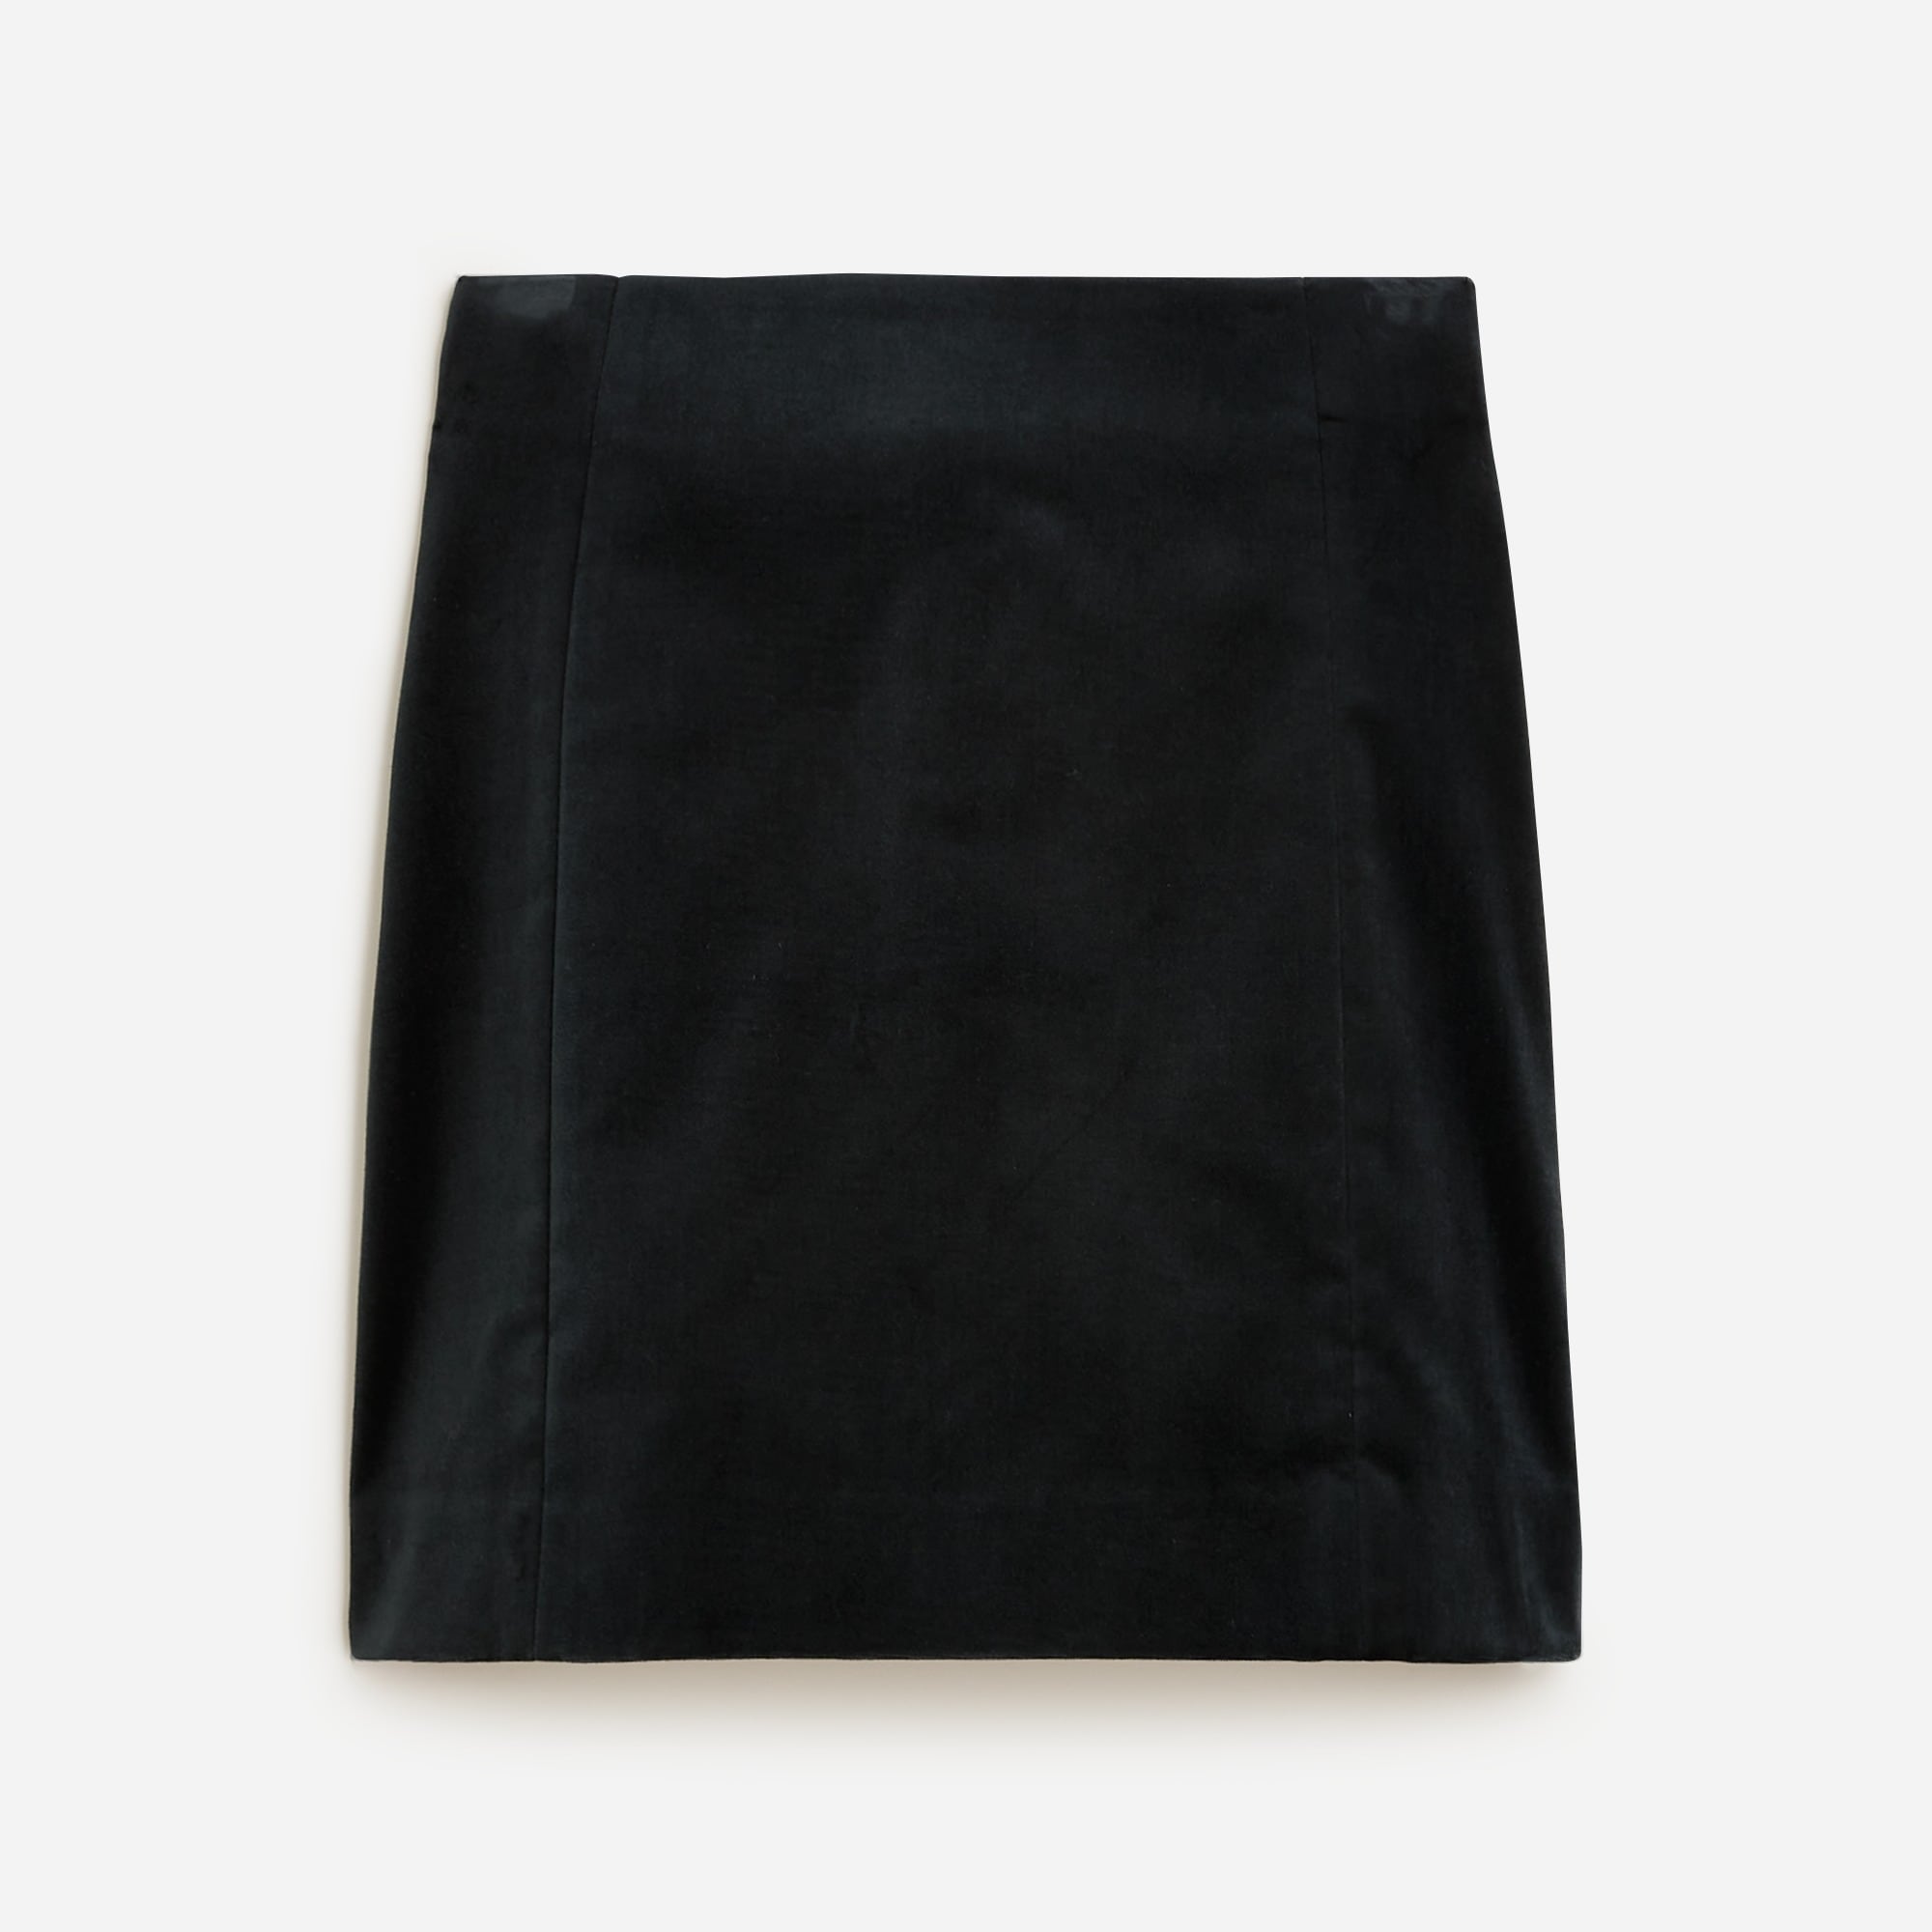  A-line mini skirt in stretch velvet